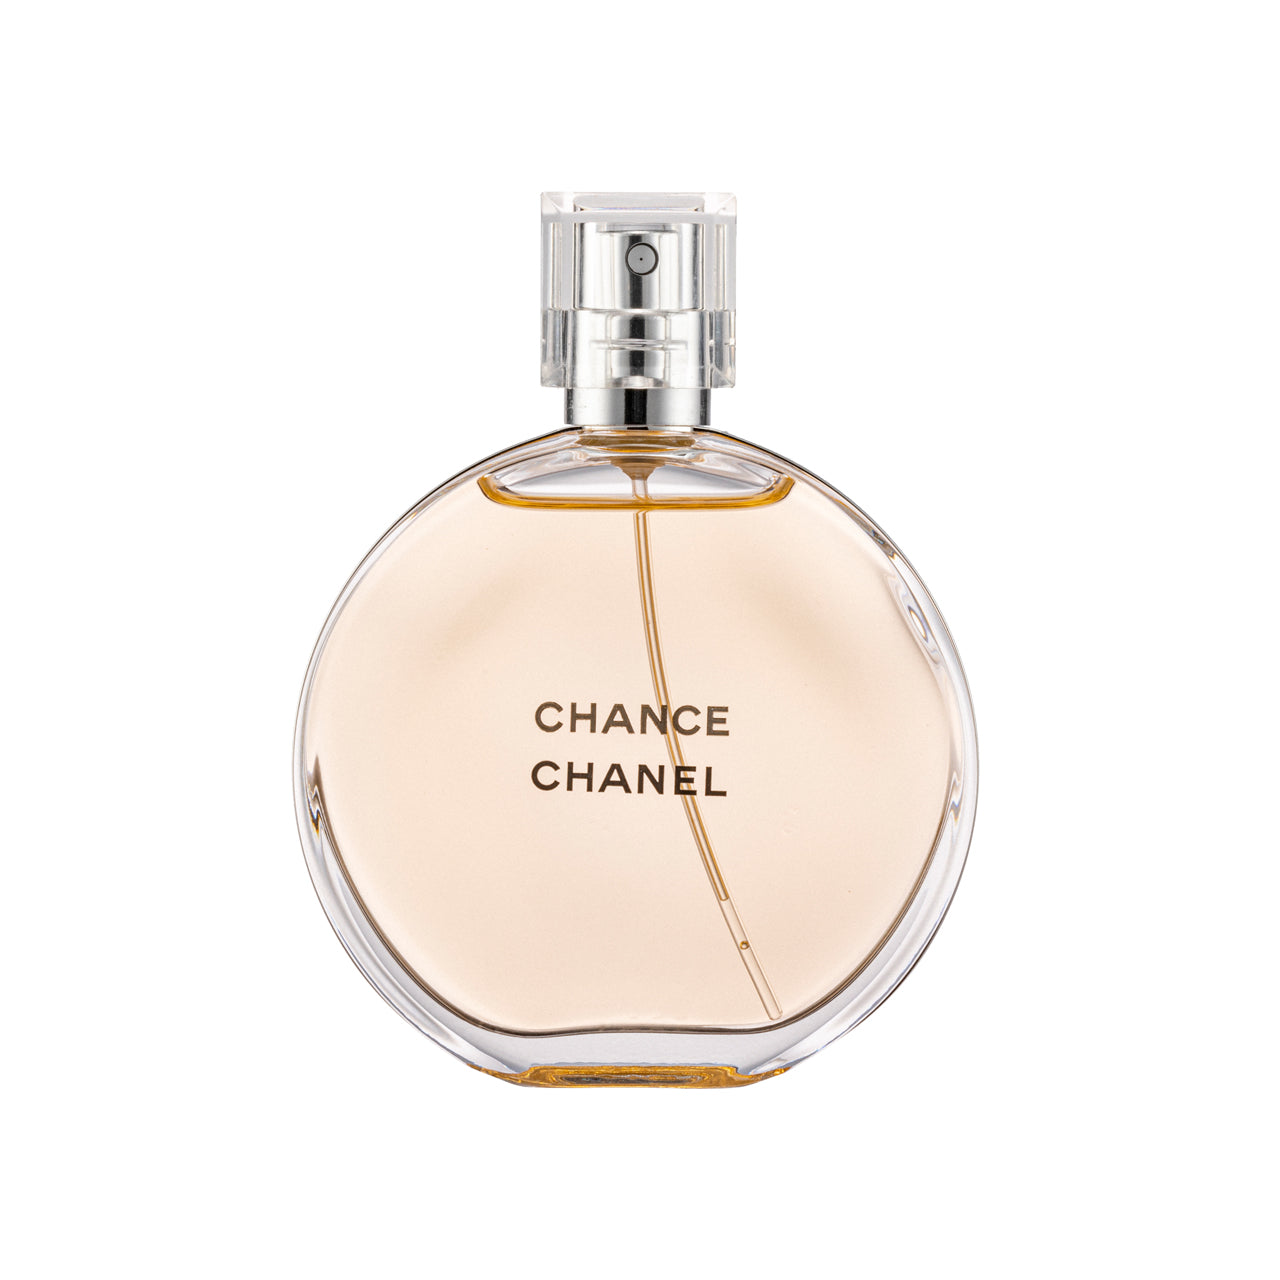 Chanel Chance Eau de Toilette Vaporisateur Spray 50ml | Sasa Global eShop